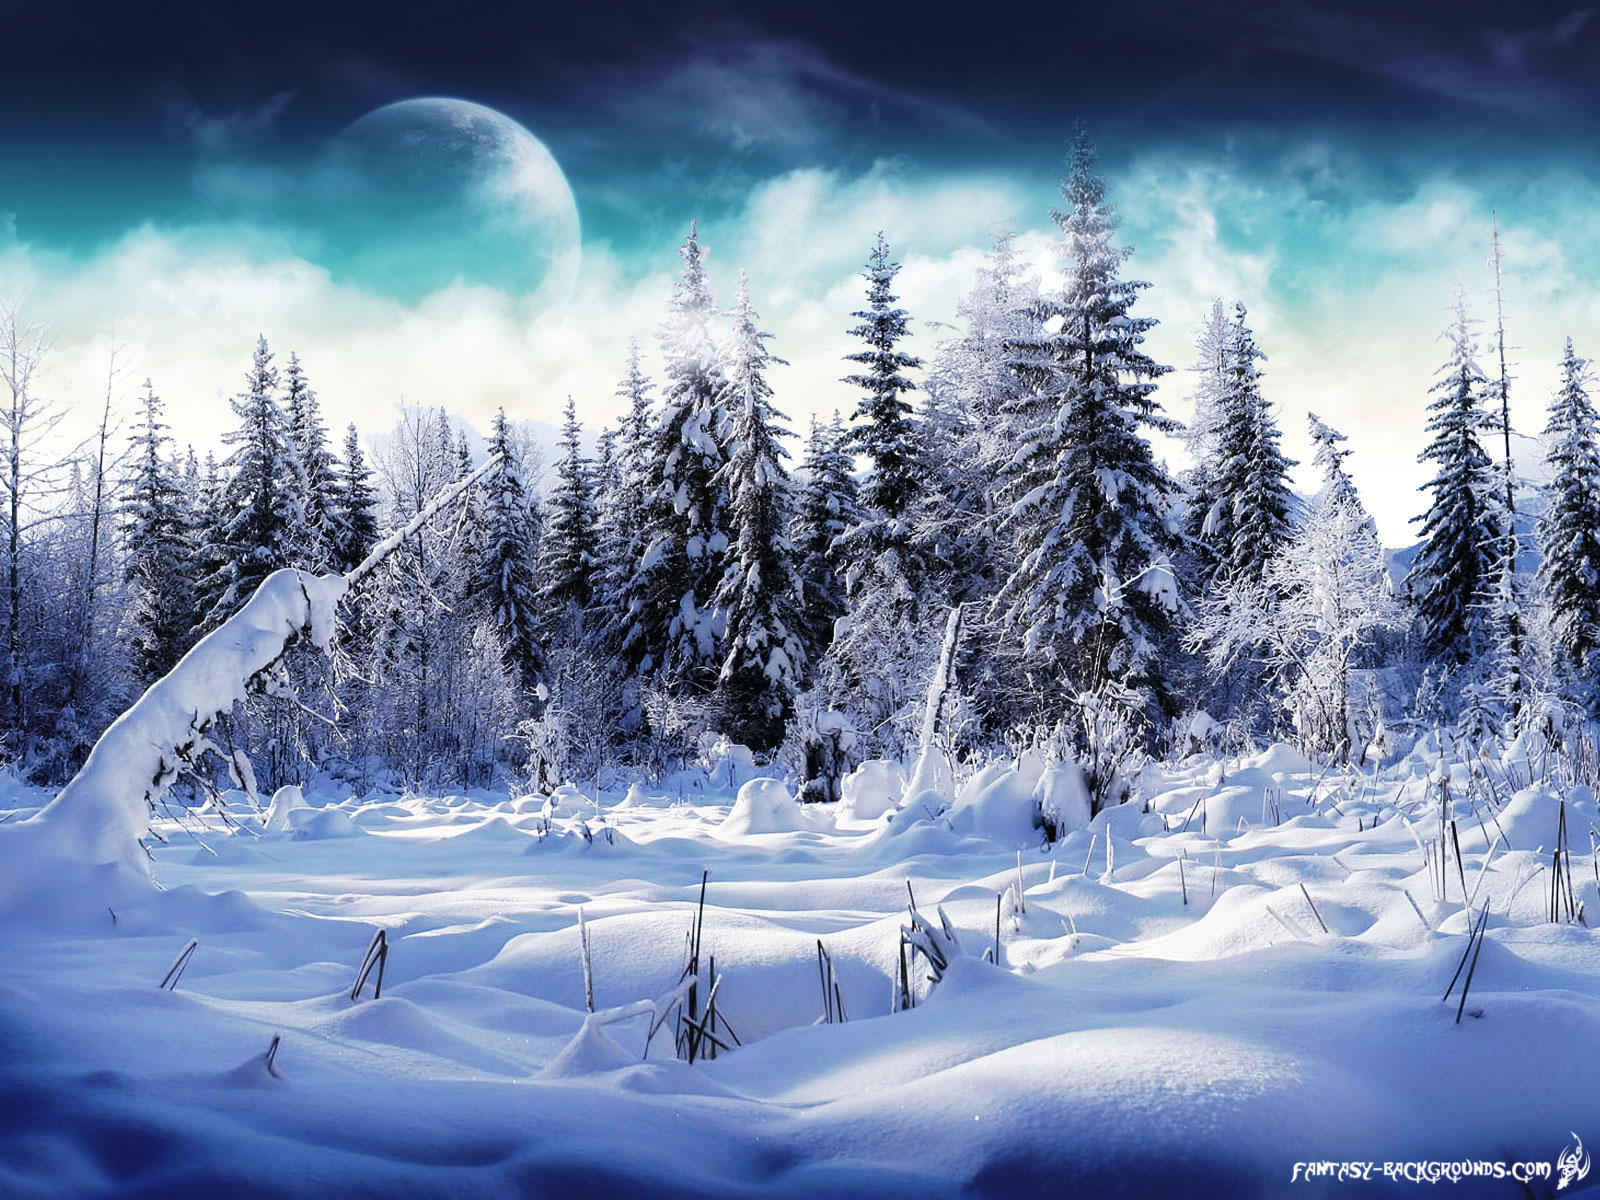 Winter Wonderland *~*